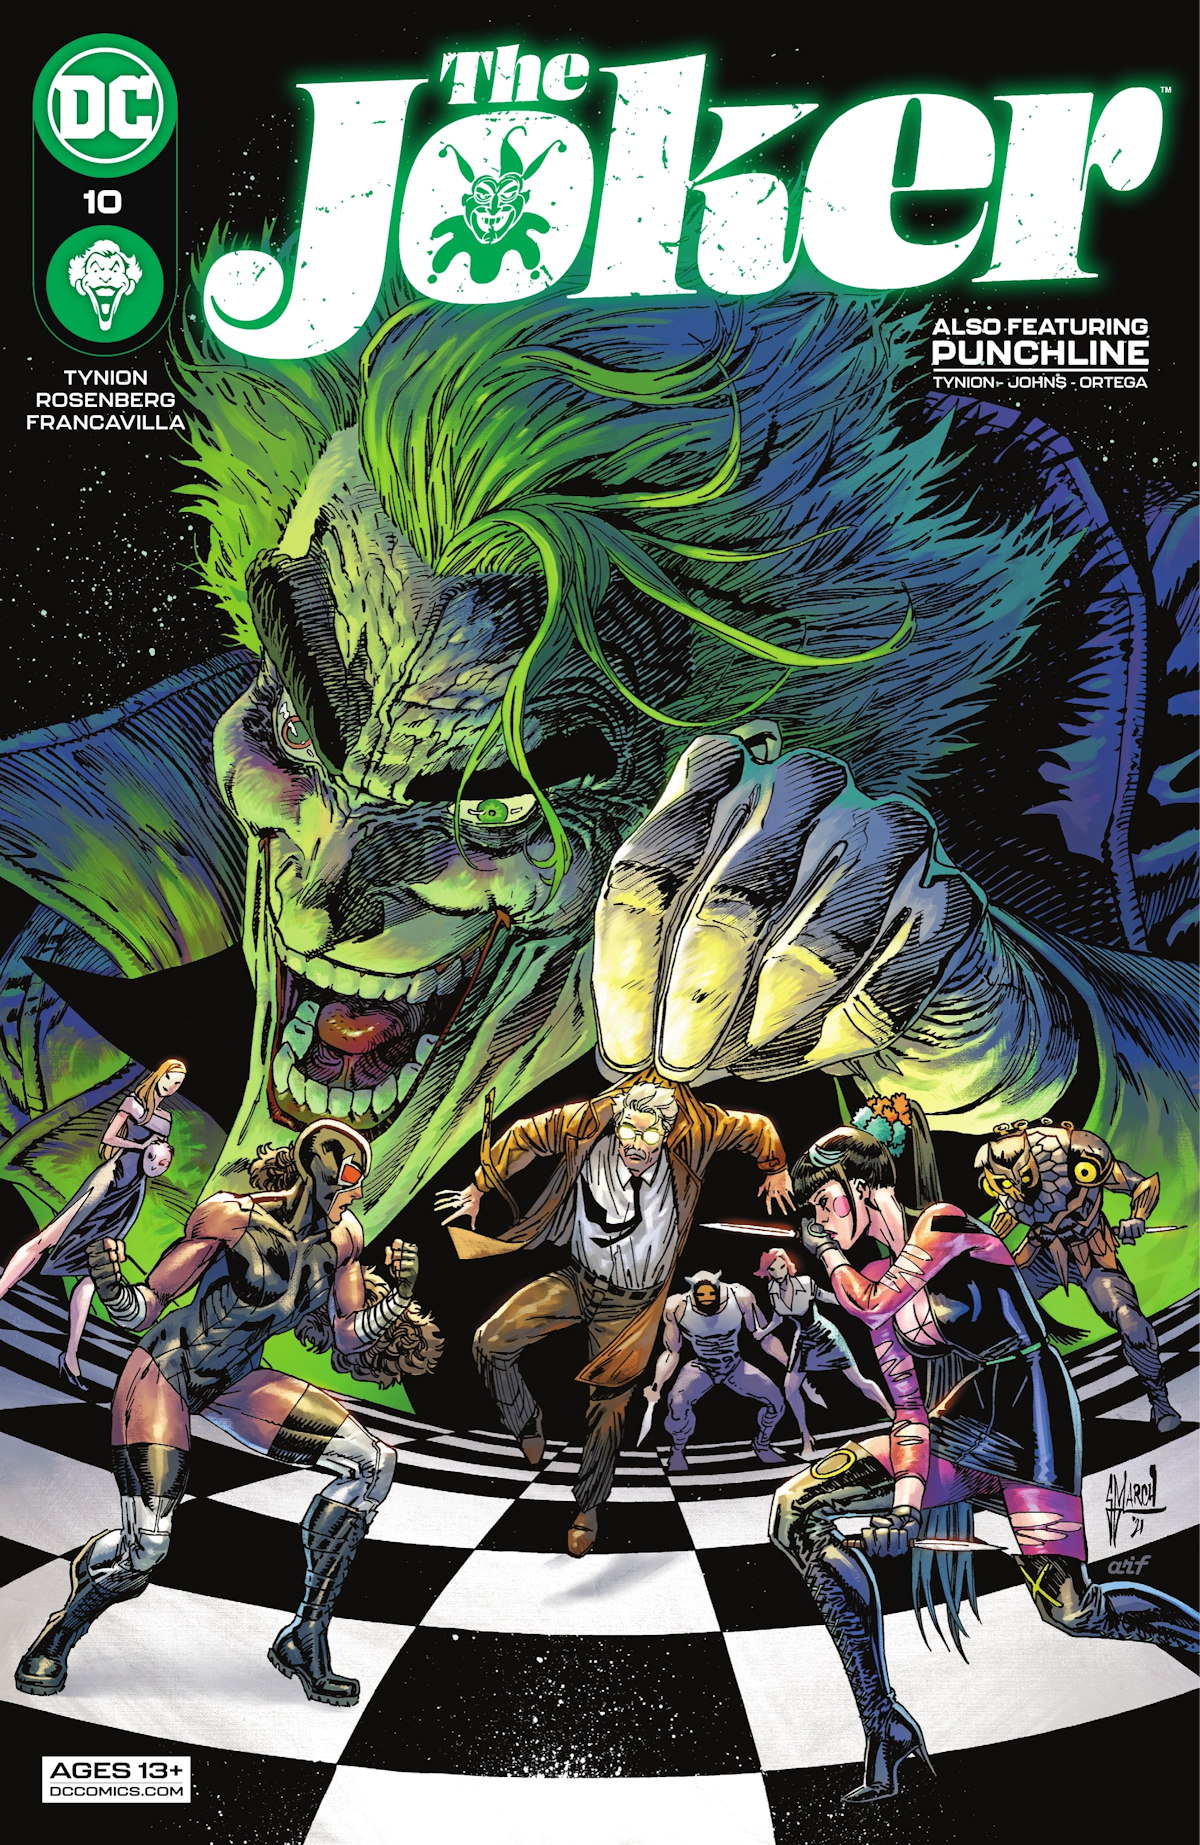 Joker Vol. 2 10 (Cover A)